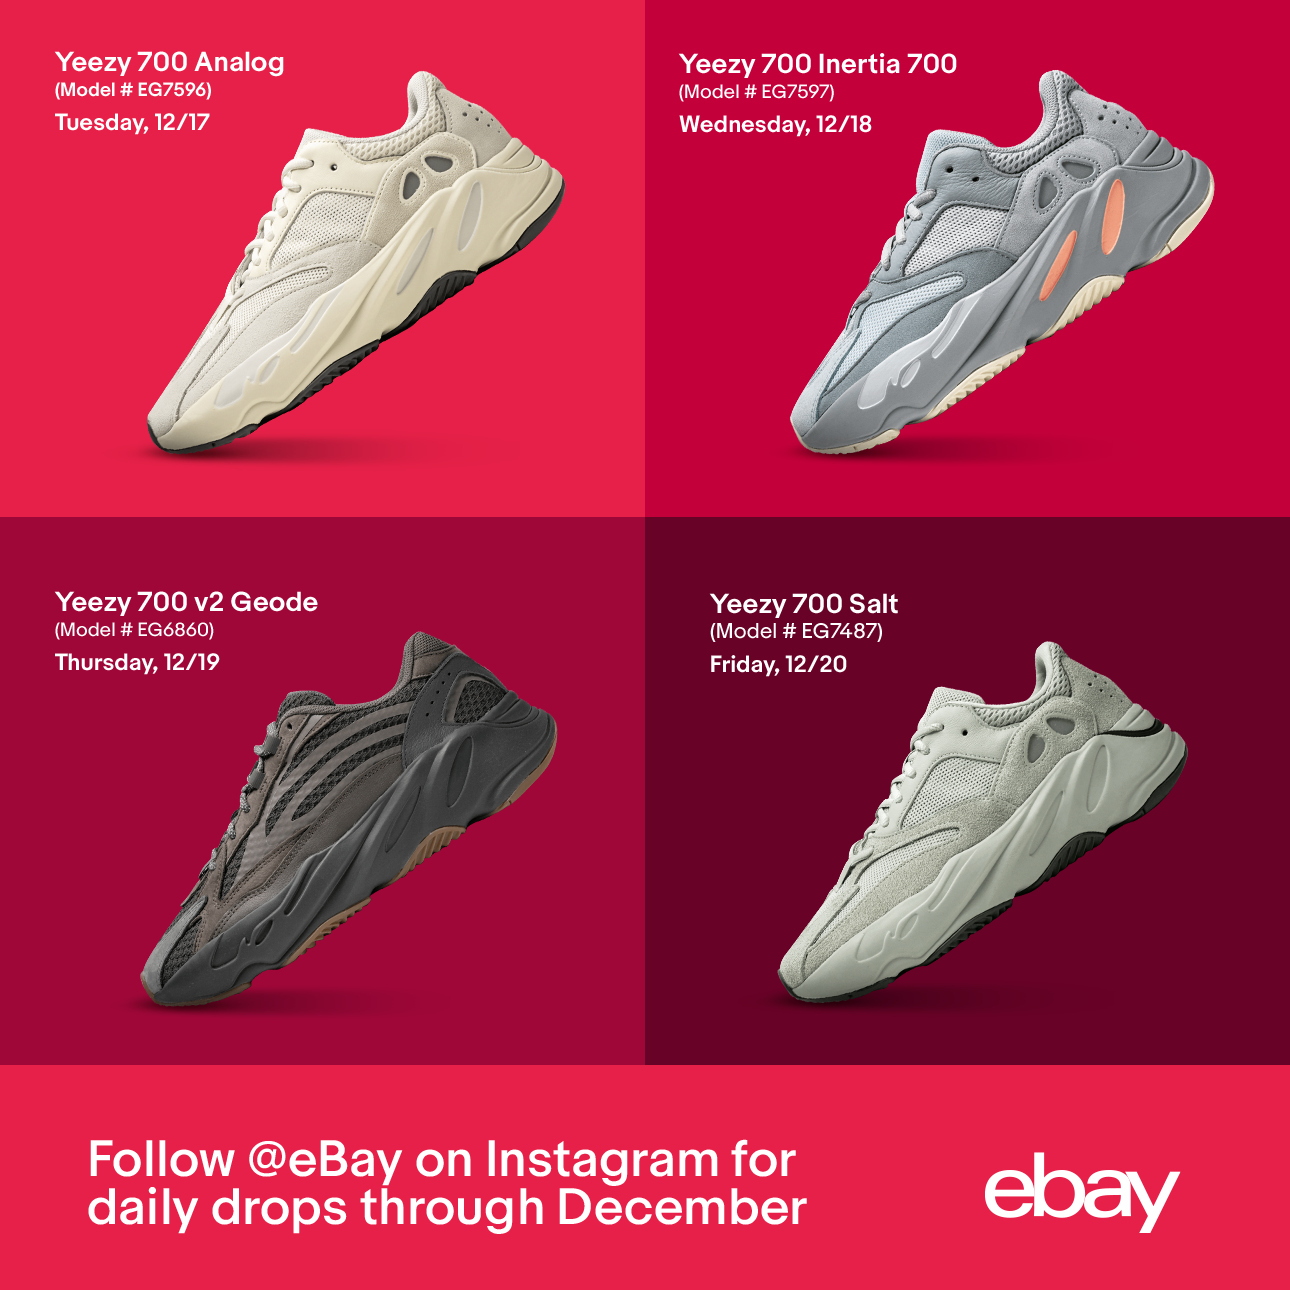 reselling sneakers on ebay